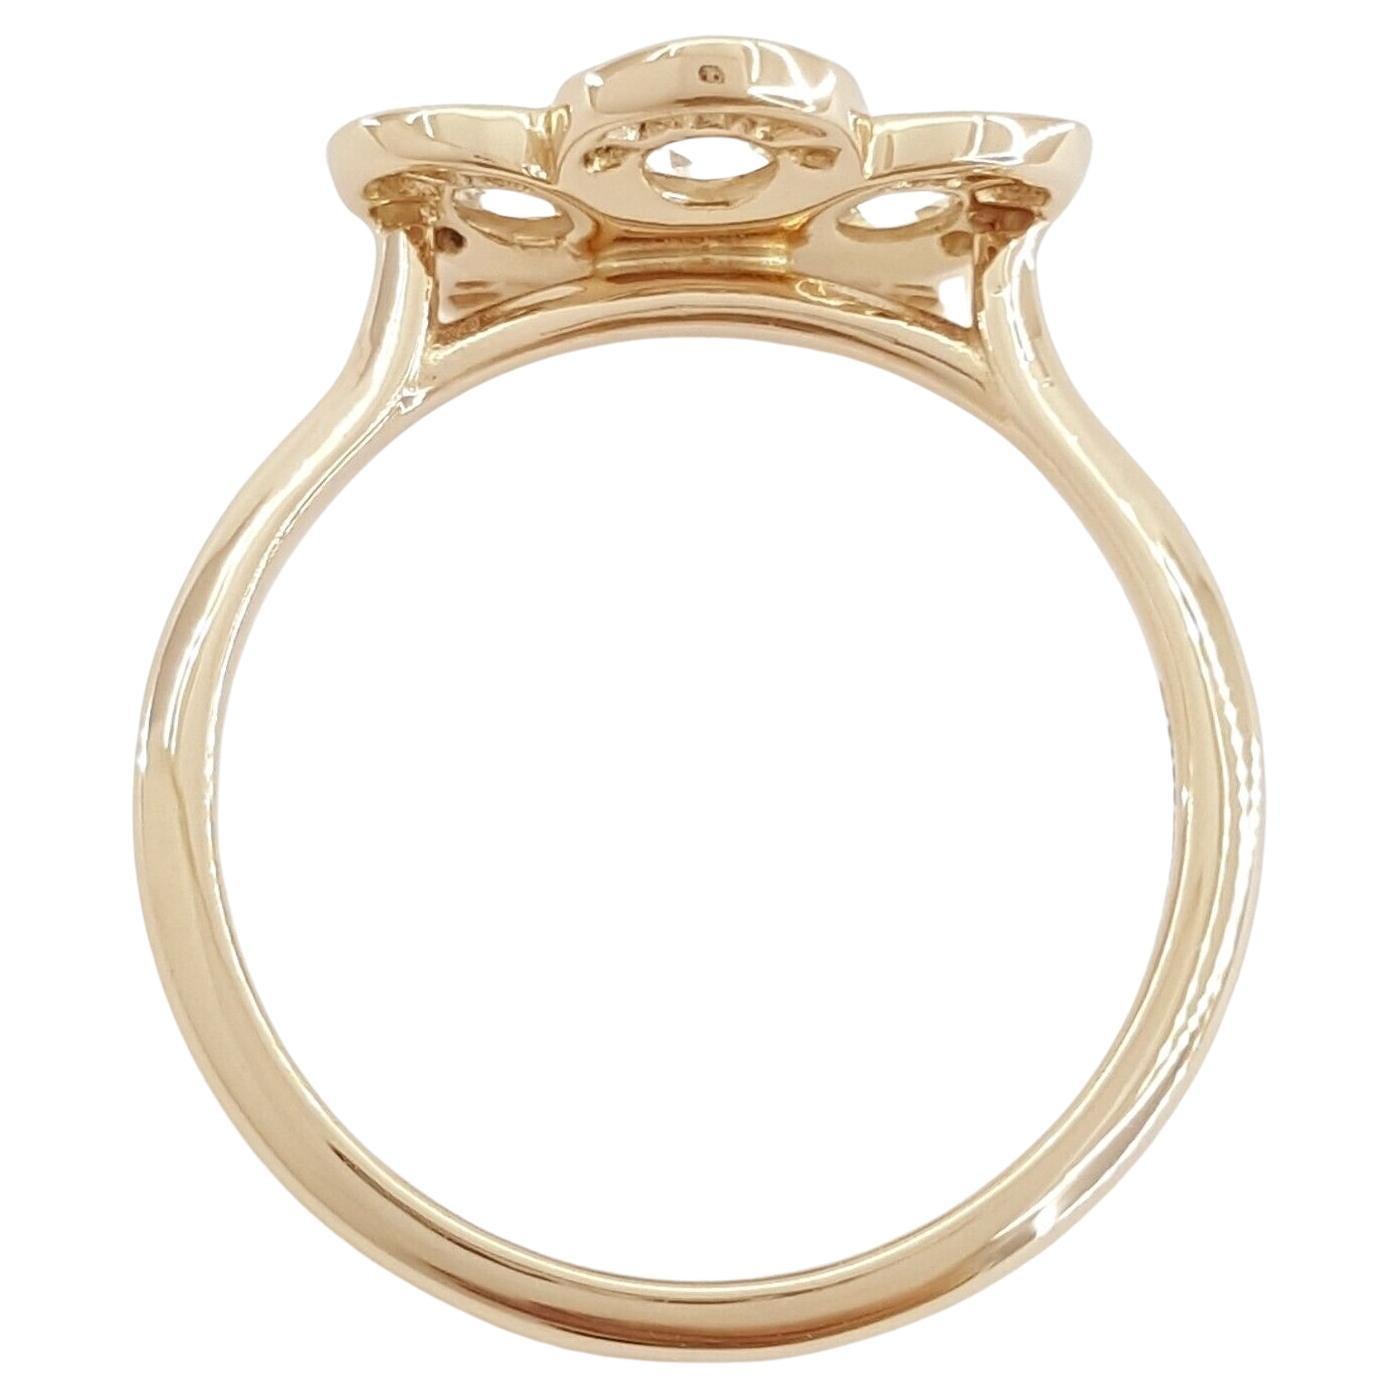 En or rose 18 carats, ce bracelet Tiffany & Co. La bague Enchanted Garden Flower affiche un poids total de diamants de 0,35 ct, avec une combinaison captivante de diamants ronds et de diamants taillés en rose.

Pesant 2,9 grammes et de taille 5, la